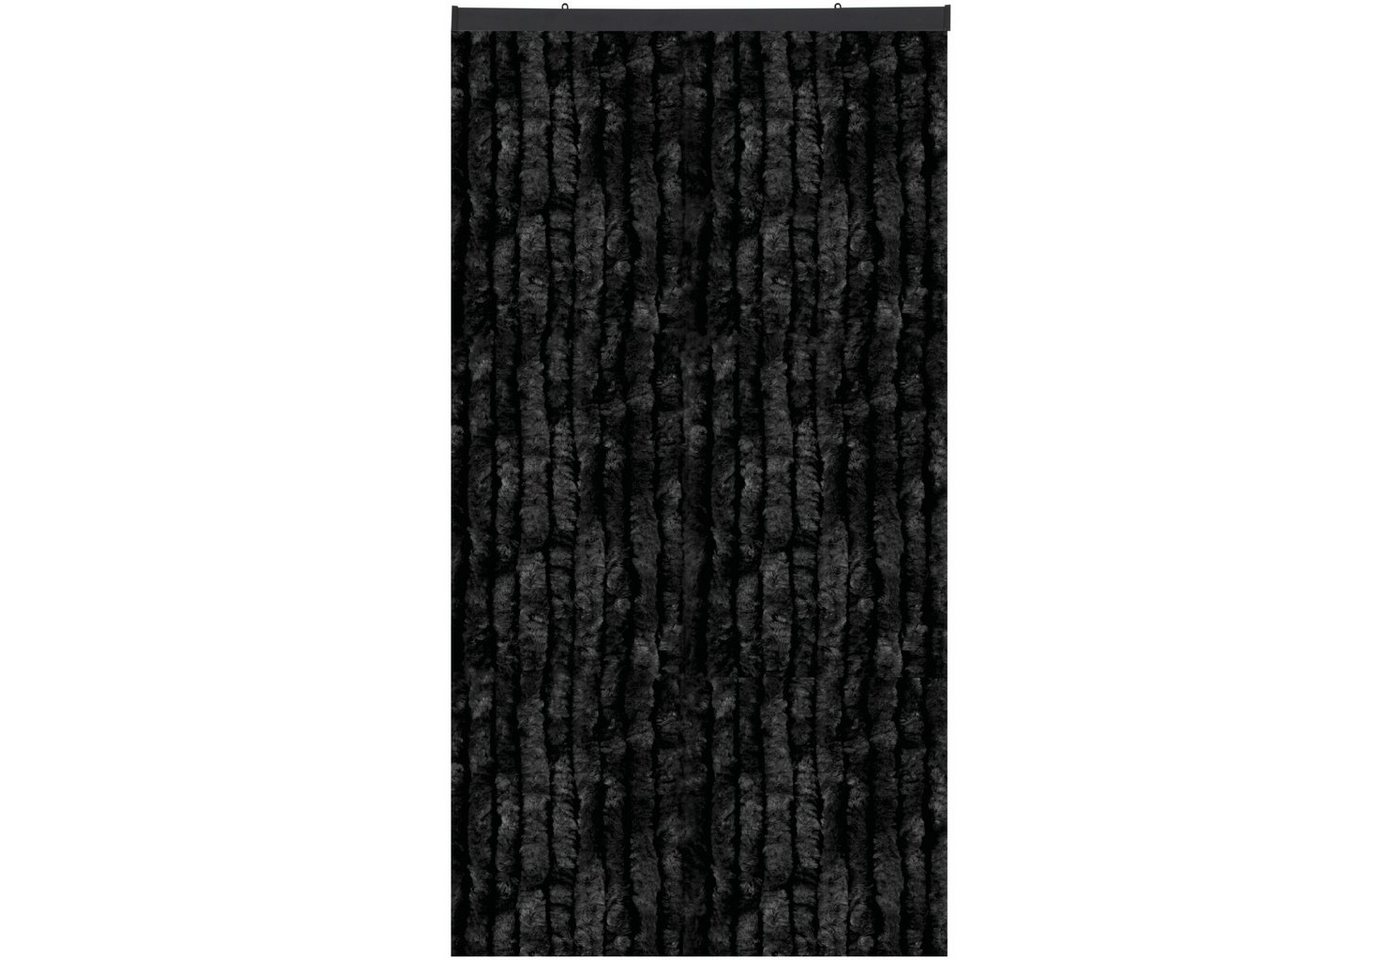 Türvorhang Flauschi, Arsvita, Ösen (1 St), Flauschvorhang 160x185 cm in Unistreifen schwarz, viele Farben von Arsvita